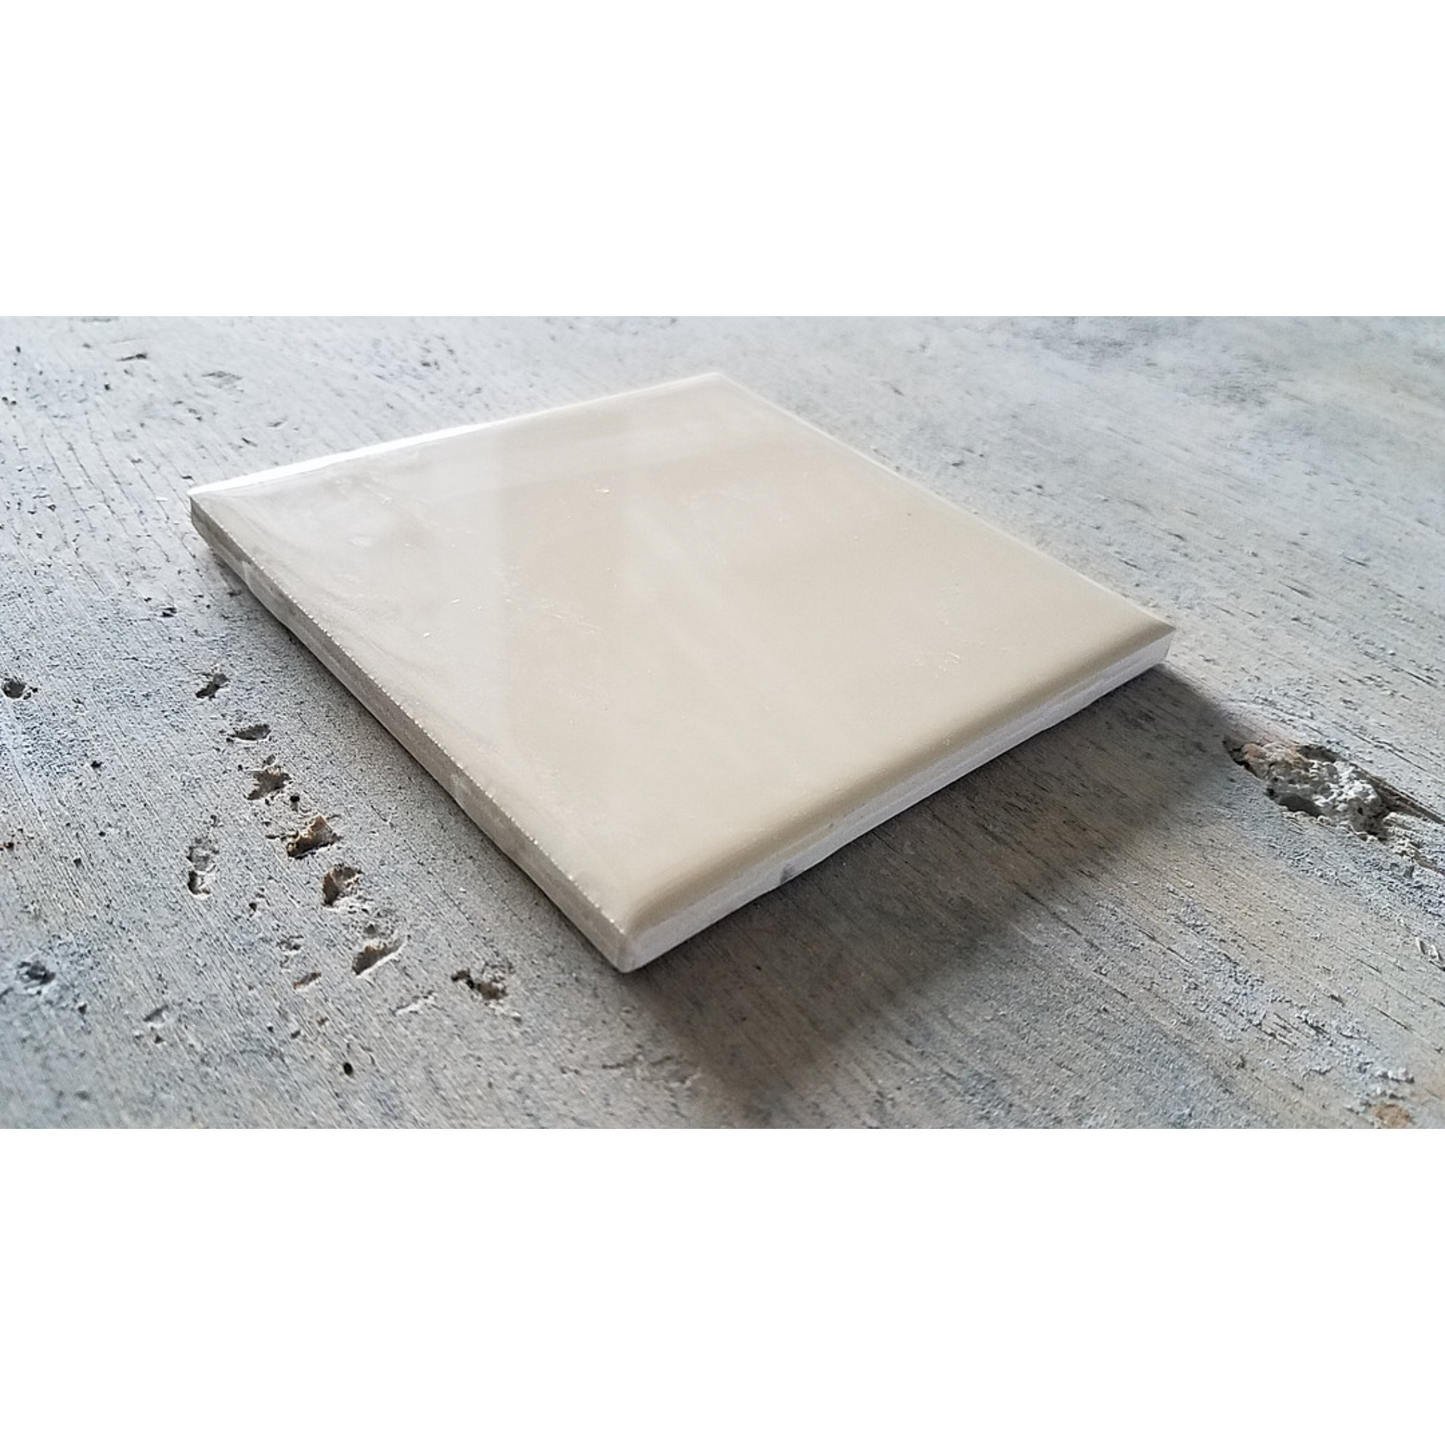 4-1/4 x 4-1/4" Losa Ceramica (100 unid./caja) Se vende por caja - 12.5 p2/caja